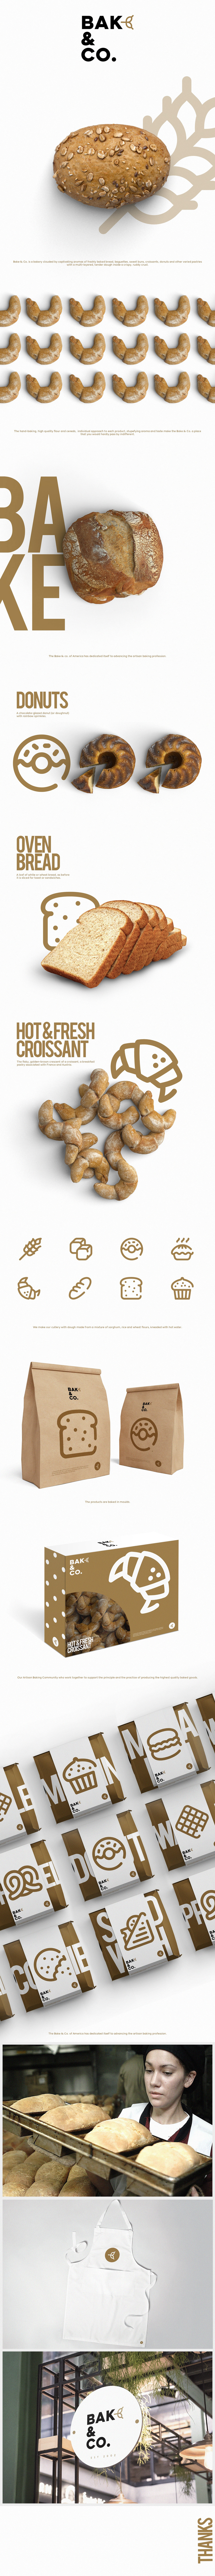 bakery branding  Graphic Designer bake oven bake & co. design art direction  identity